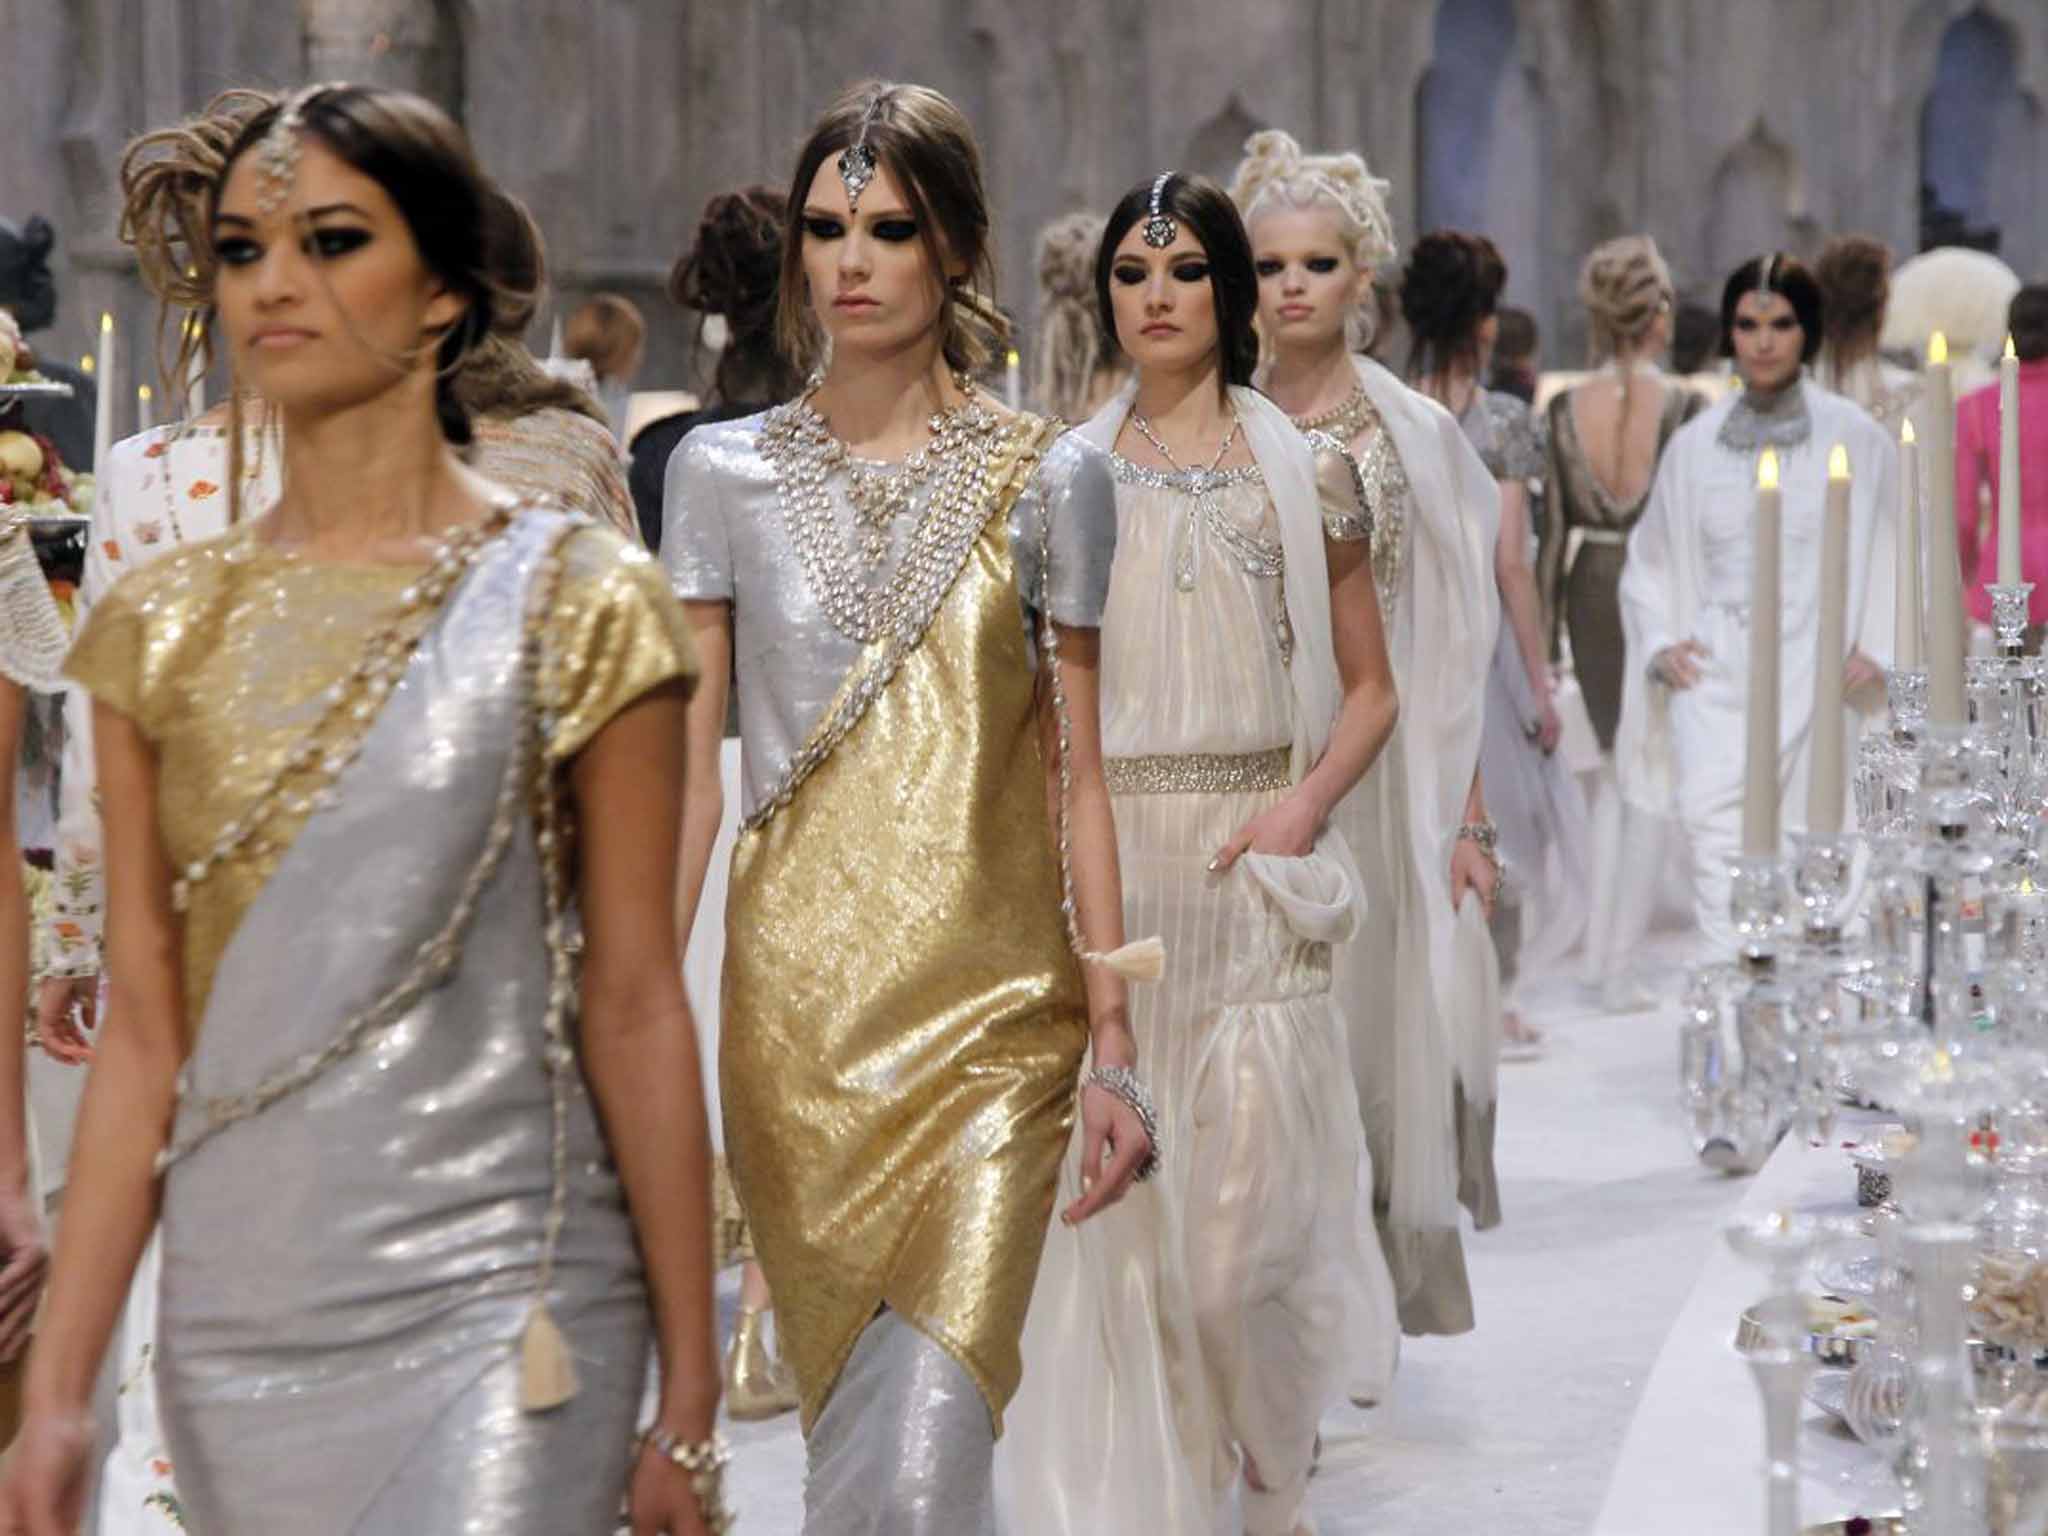 &#13;
Chanel celebrates India for pre-fall 2012 &#13;